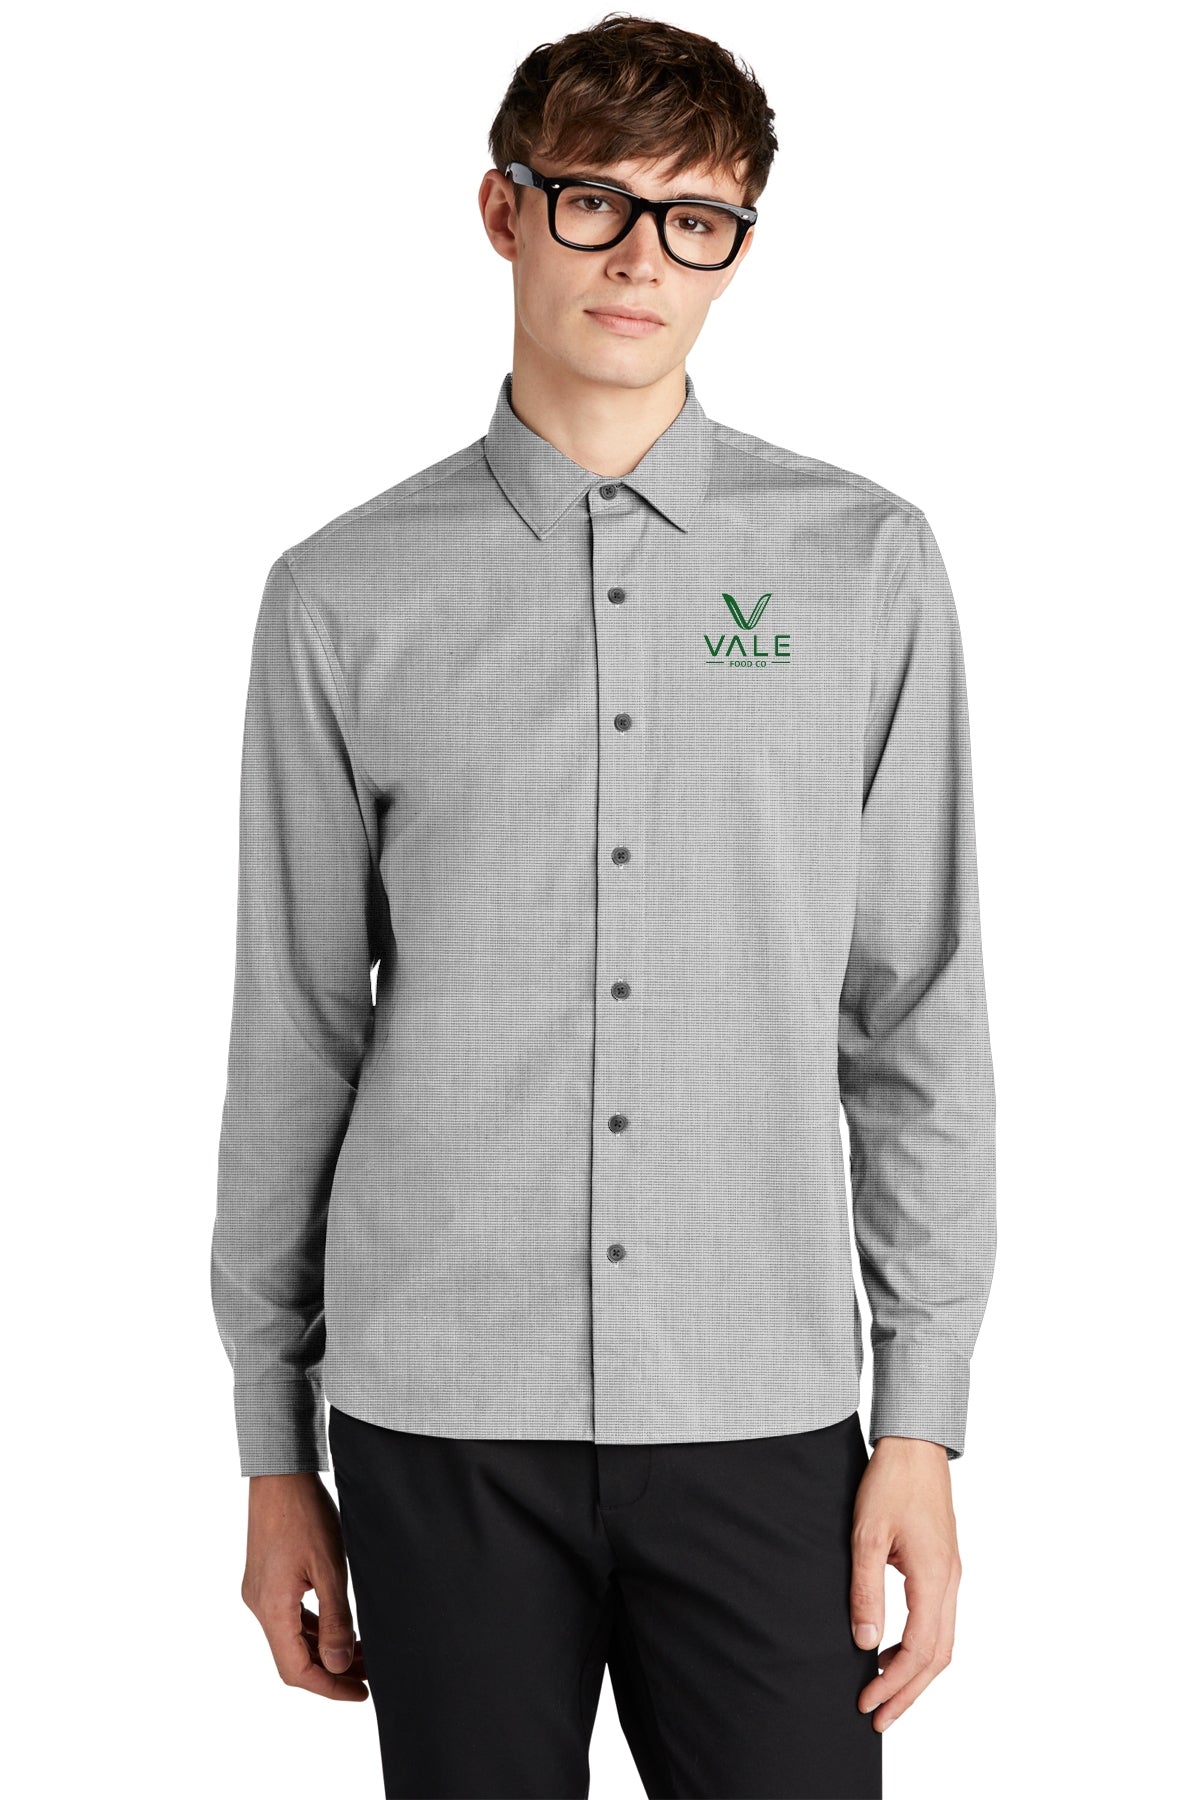 Mercer-Mettle Long Sleeve Stretch Woven Shirt